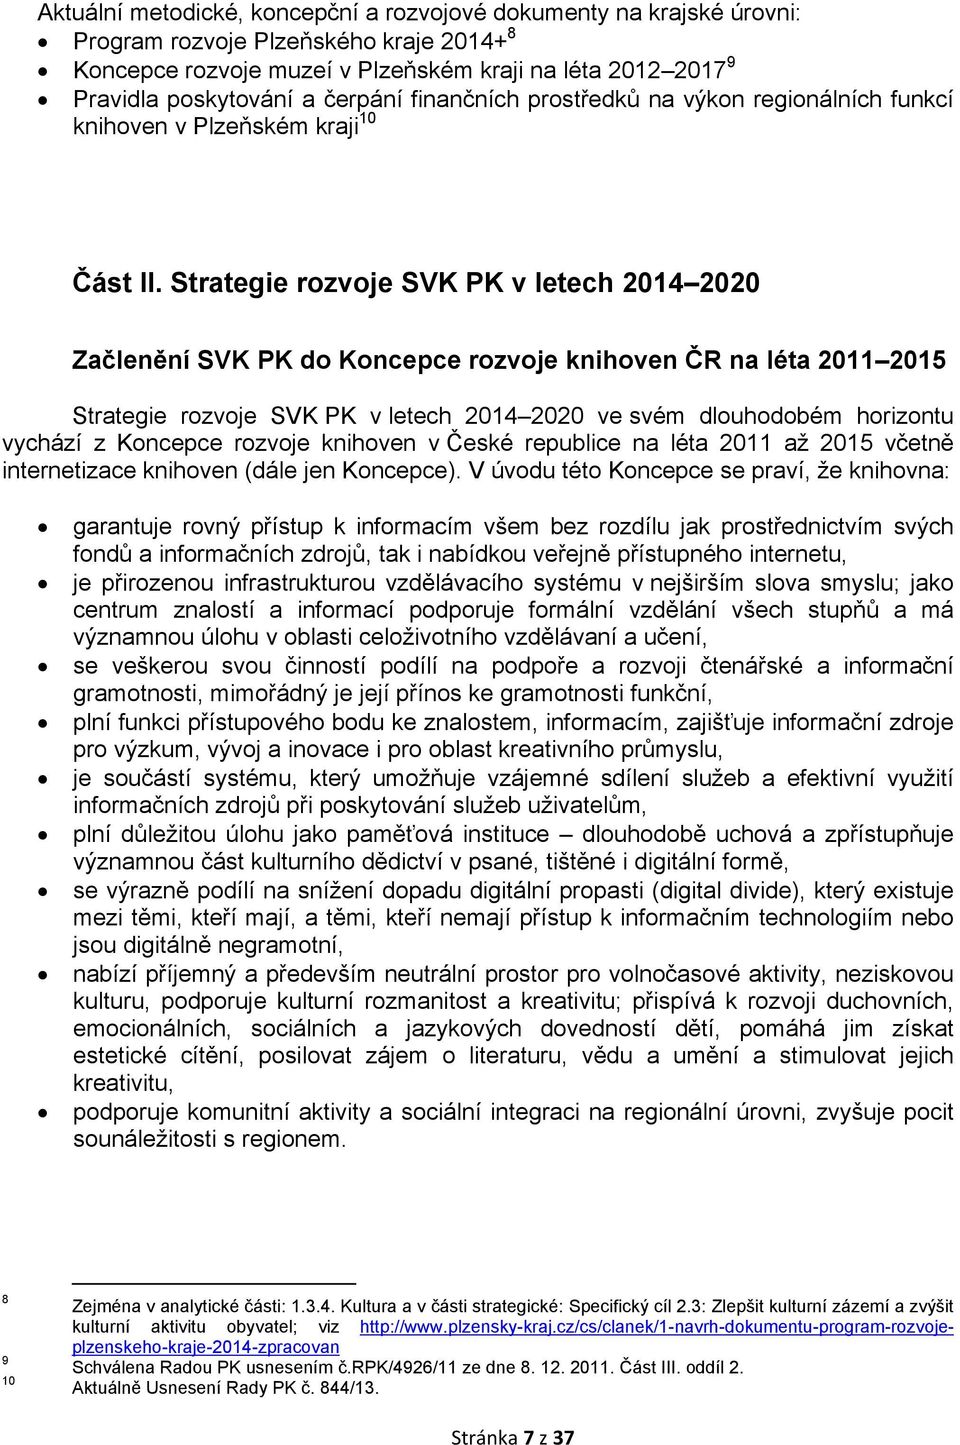 Strategie rozvoje SVK PK v letech 2014 2020 Začlenění SVK PK do Koncepce rozvoje knihoven ČR na léta 2011 2015 Strategie rozvoje SVK PK v letech 2014 2020 ve svém dlouhodobém horizontu vychází z